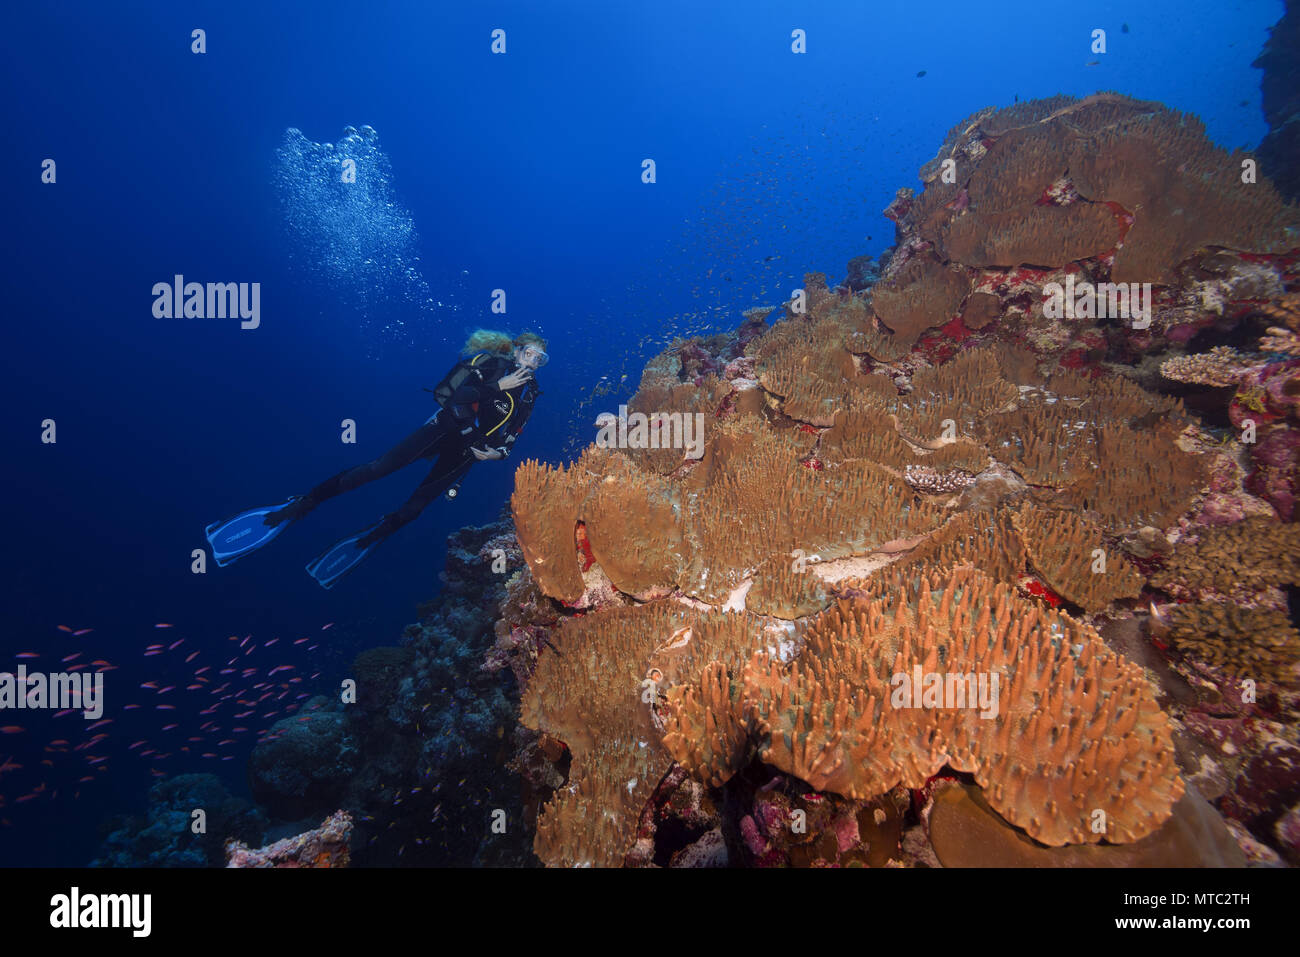 Weibliche Scuba diver Lool am wunderschönen Korallenriff mit Weichkorallen - Leder Korallen Sinularia gibberosa) Stockfoto